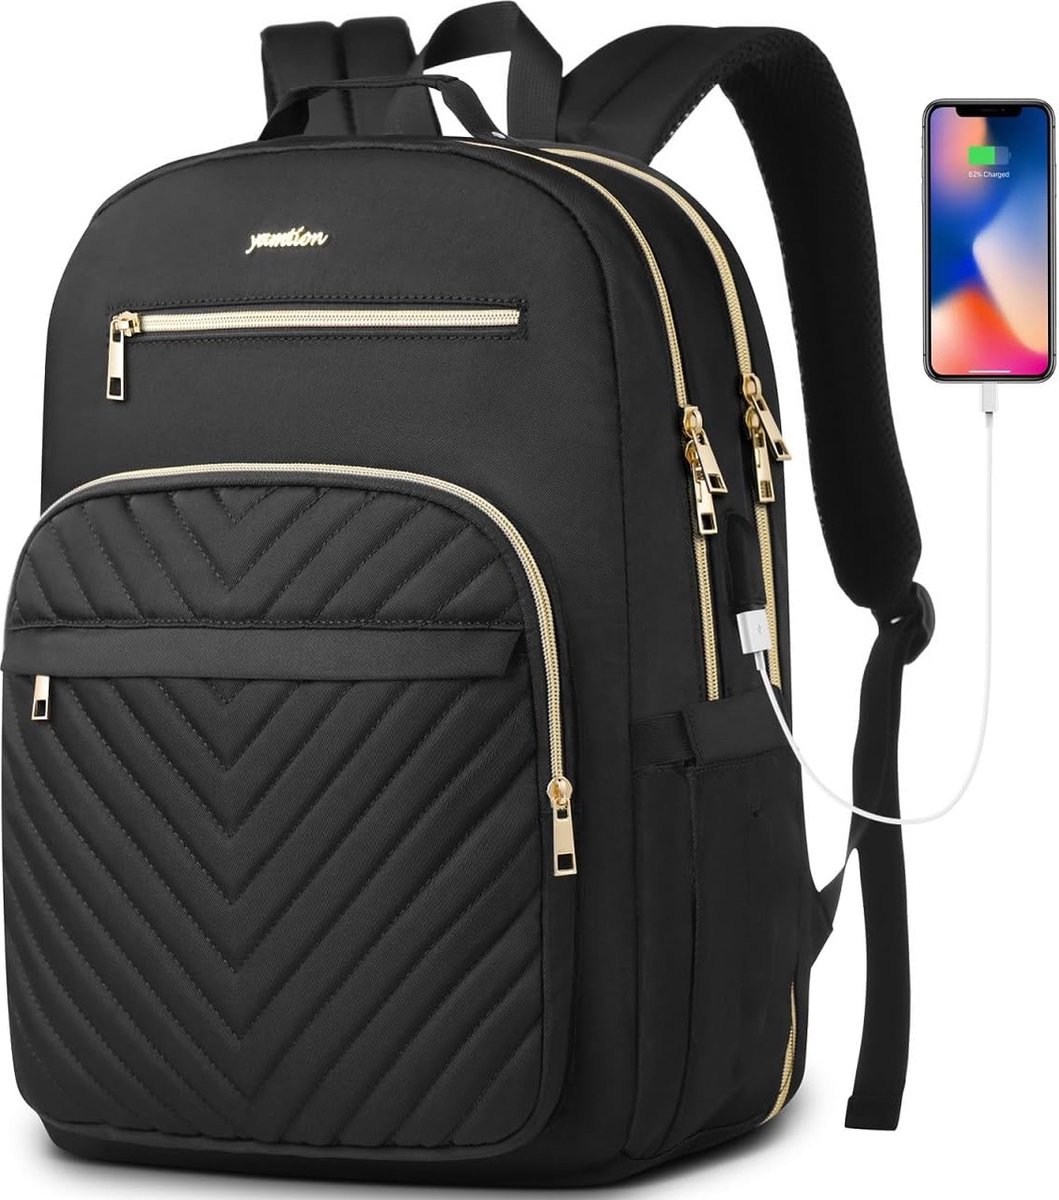 Laptoptas 15.6 inch - Zwart motief - USB-oplaadpoort - 45 x 32 x 15 cm - Rugzak voor kantoor, school, werk, reizen - 30 L - Veel opbergruimte